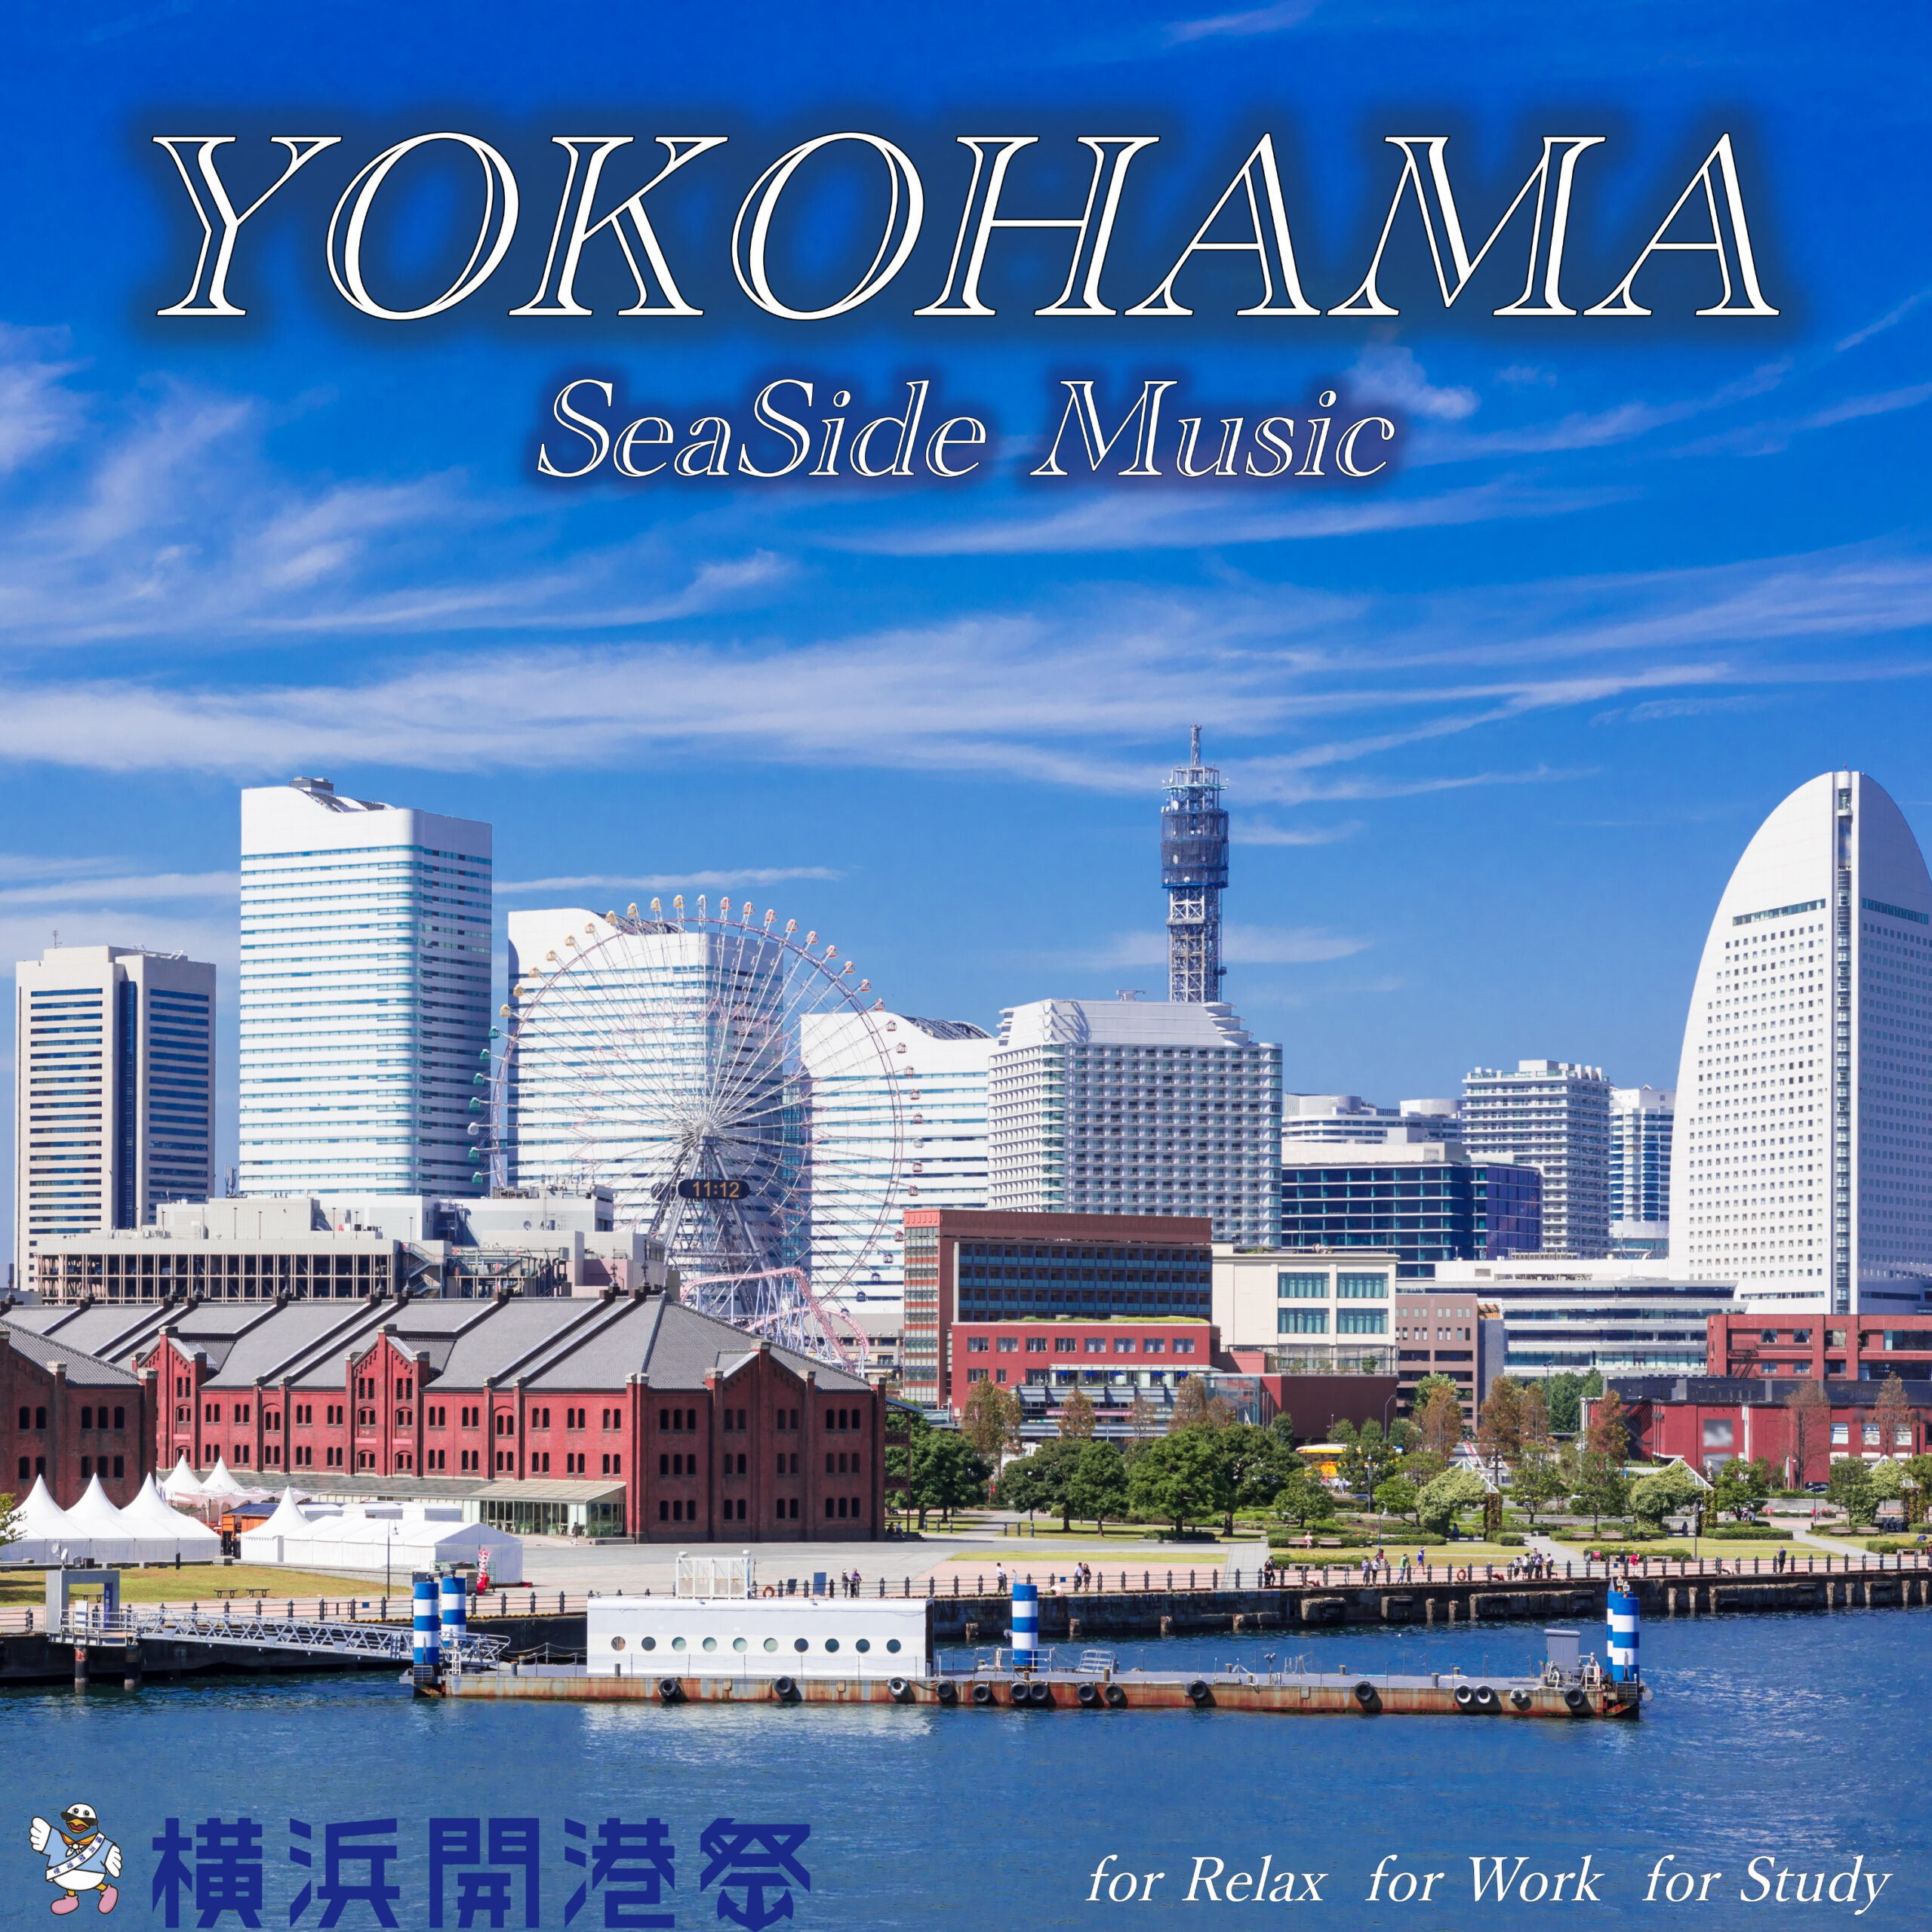 横浜開港祭 YOKOHAMA SeaSide Music for Relax for Work for Study 横浜を感じるリラックスギターBGM